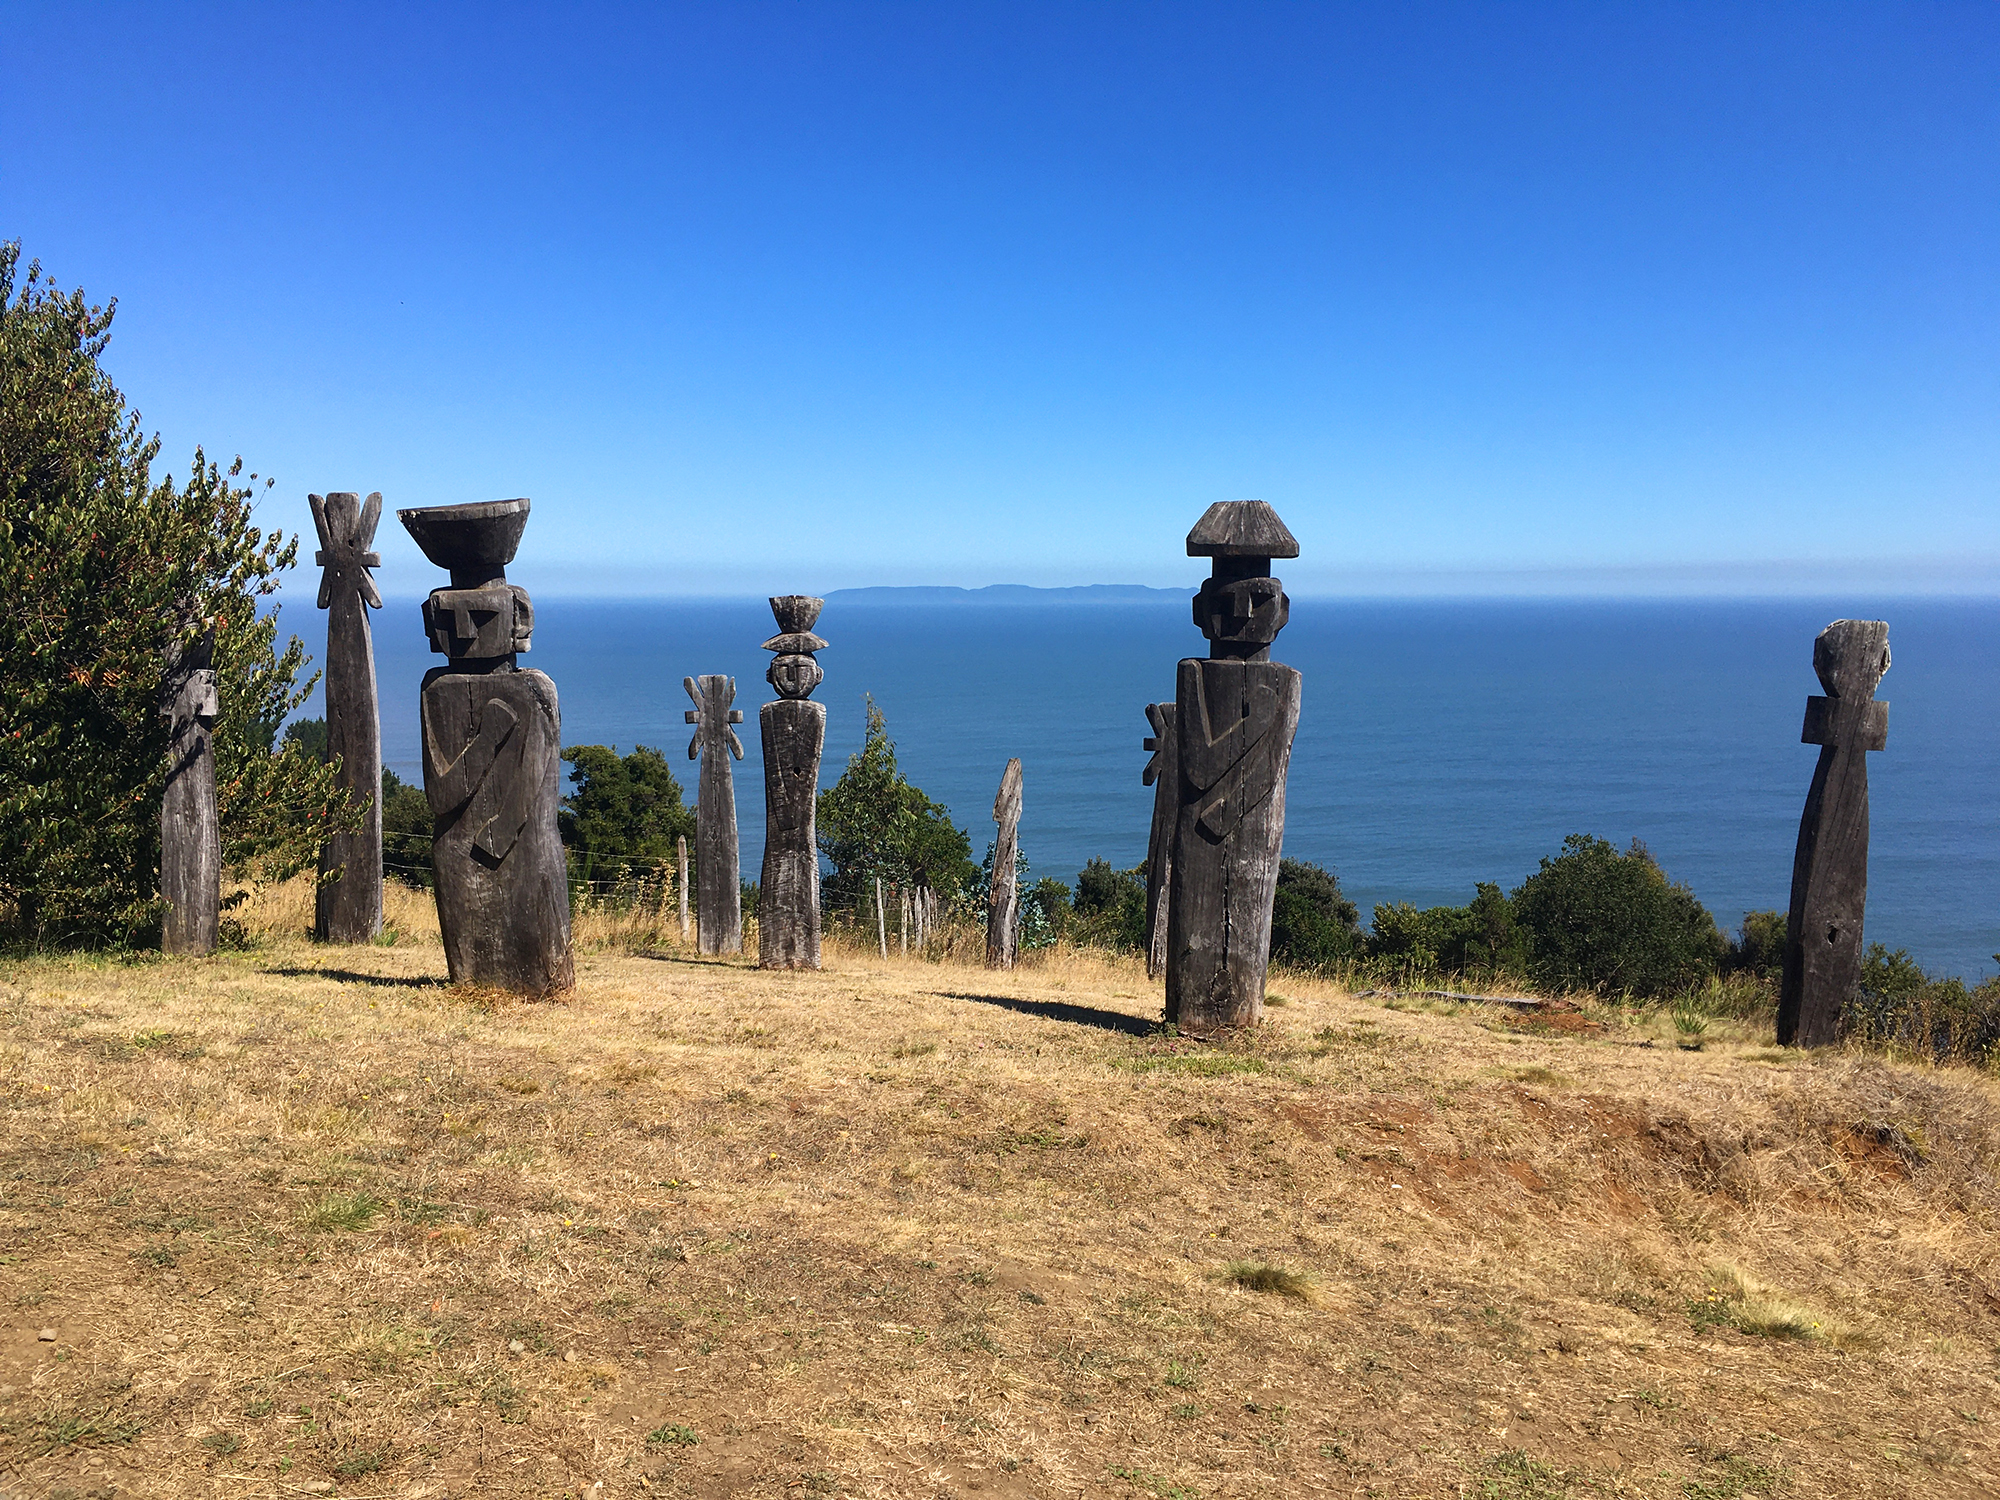 Tirua Sur Chile statues